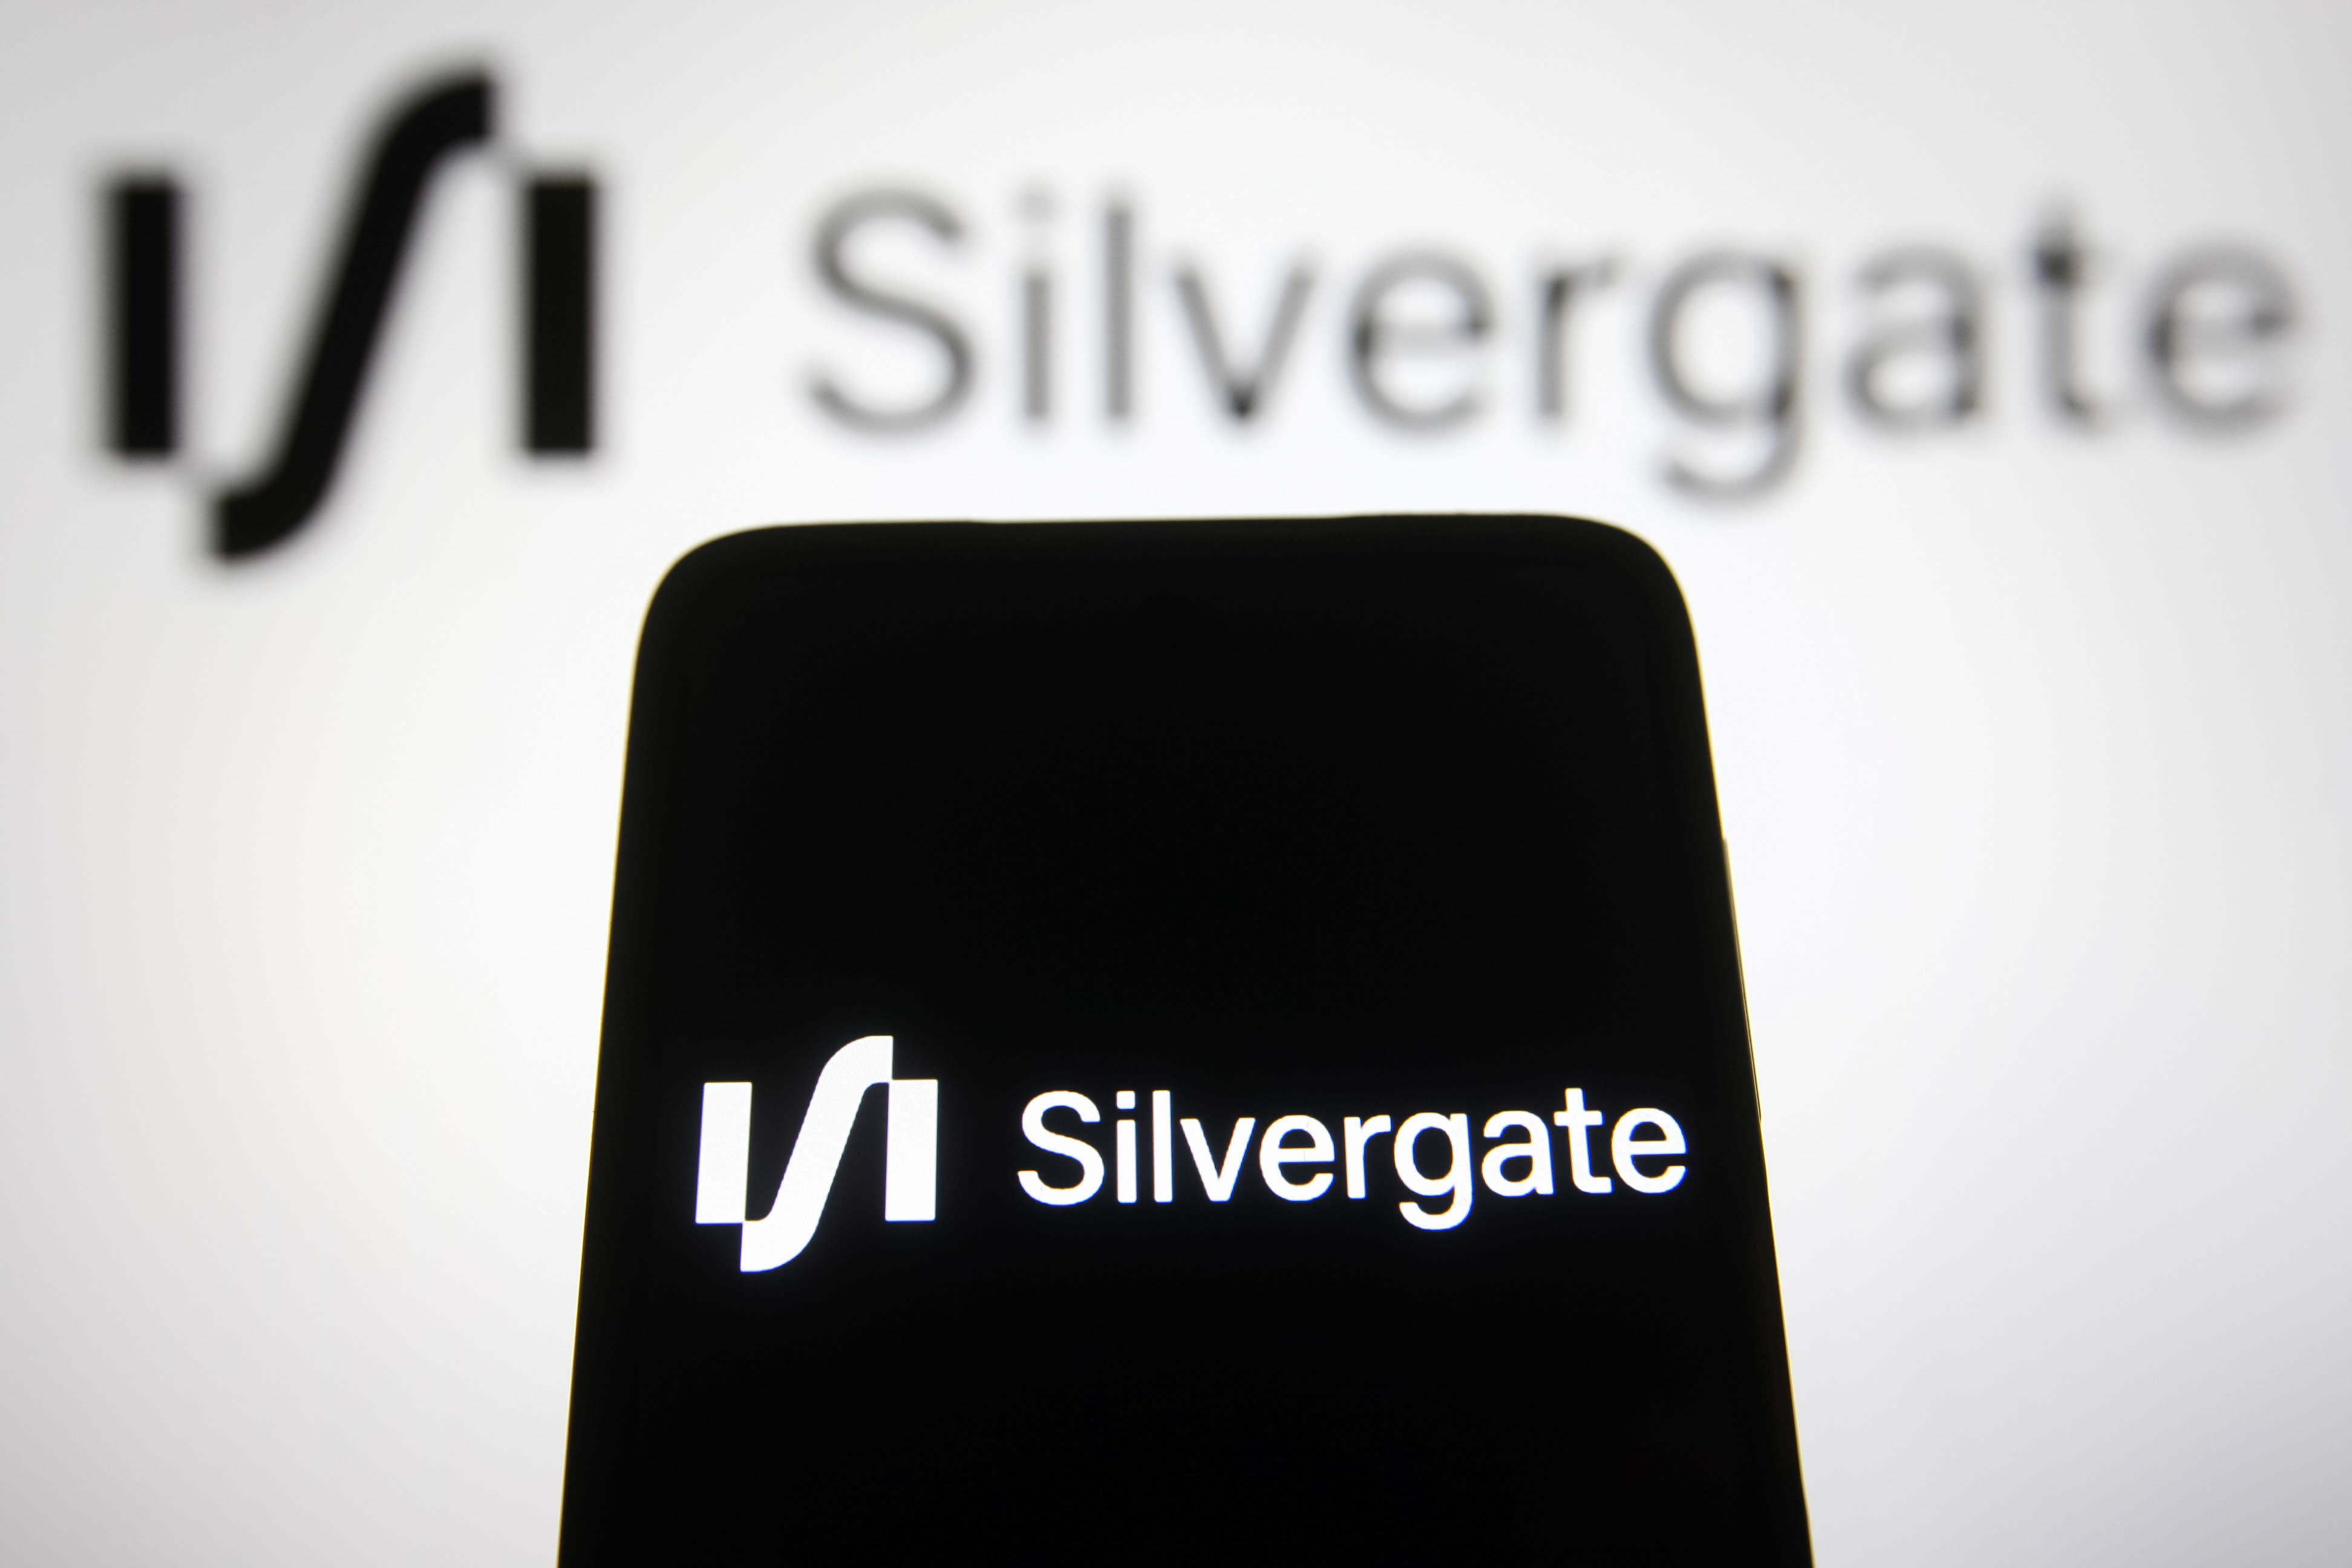 Silvergate, Etsy, SVB Financial, Uber und mehr